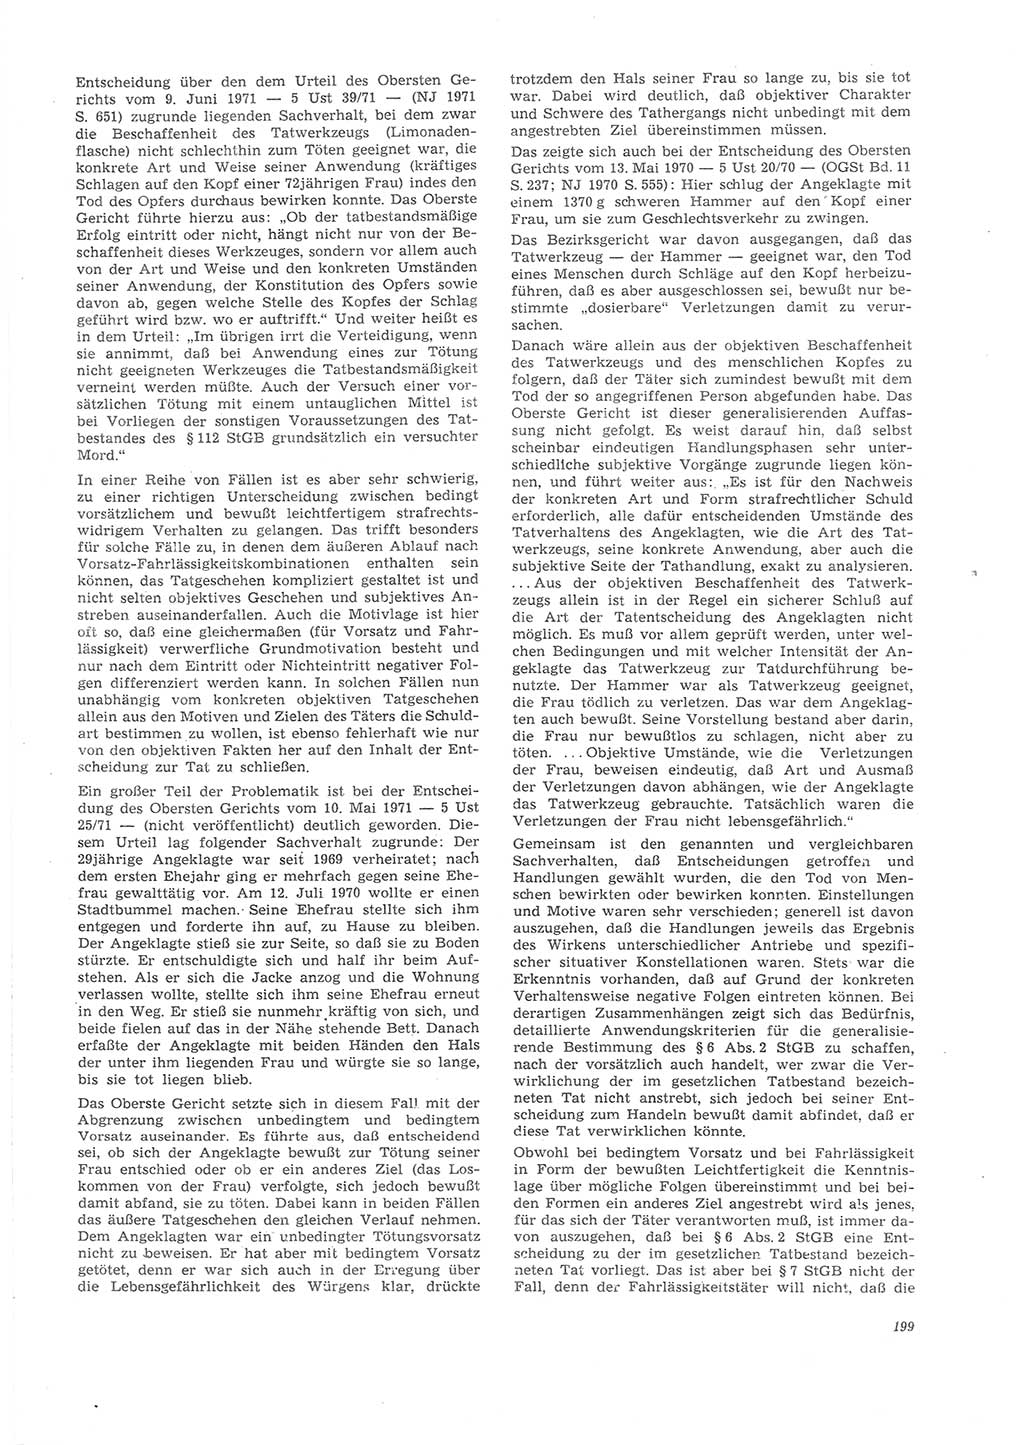 Neue Justiz (NJ), Zeitschrift für Recht und Rechtswissenschaft [Deutsche Demokratische Republik (DDR)], 26. Jahrgang 1972, Seite 199 (NJ DDR 1972, S. 199)